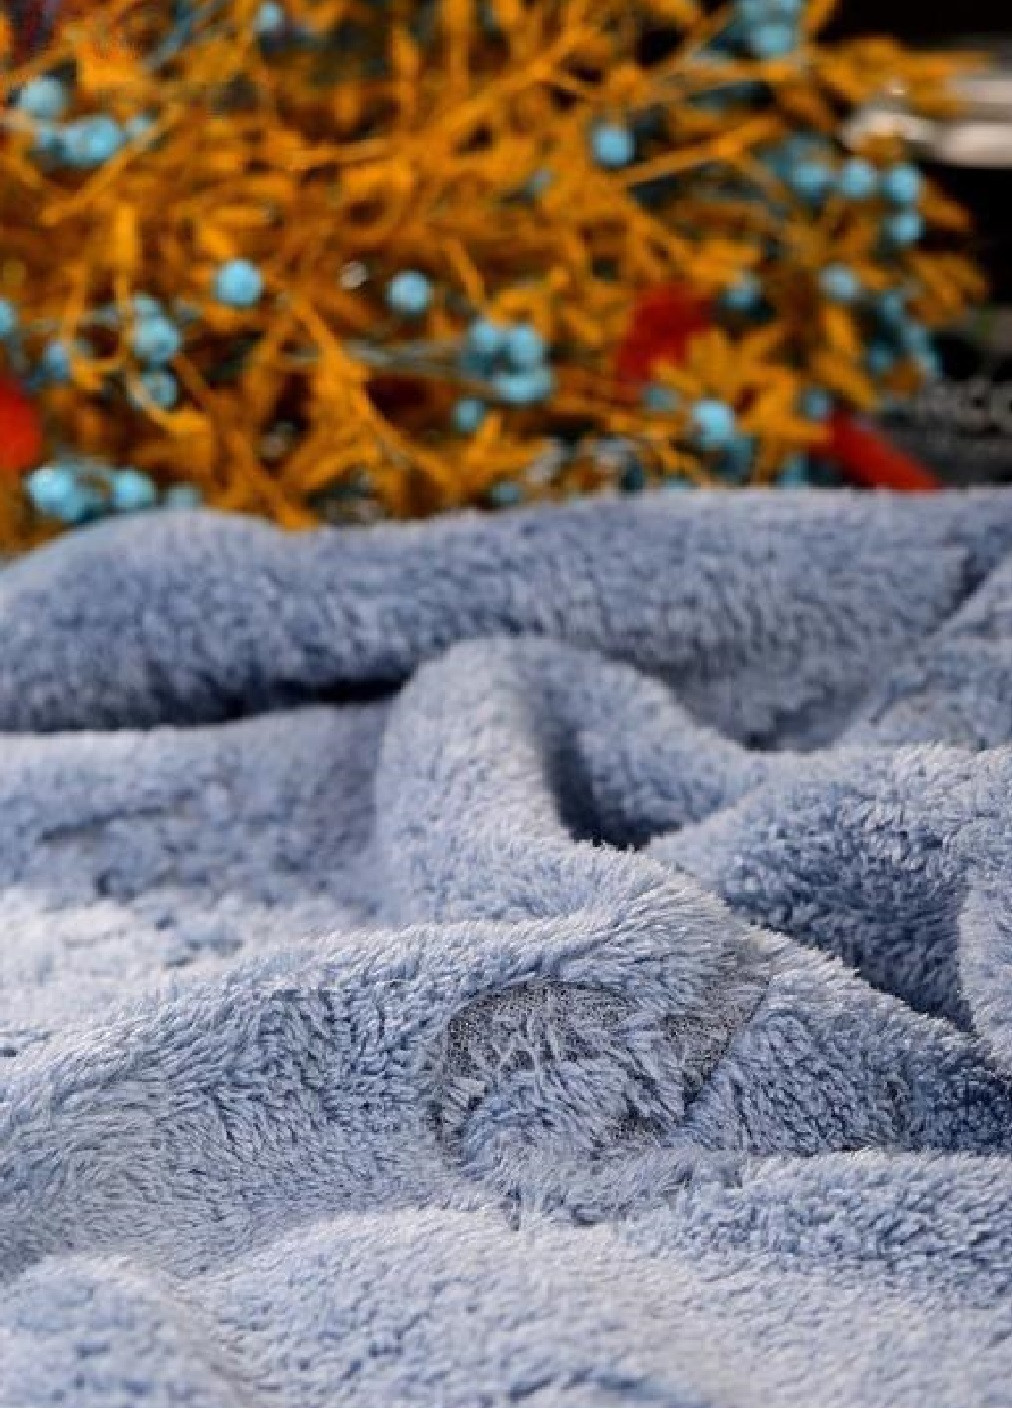 Unbranded полотенце для лица микрофибра микрофлис велюр быстросохнущее влагопоглощающее 100х50 см (476125-prob) бренд голубое логотип голубой производство -